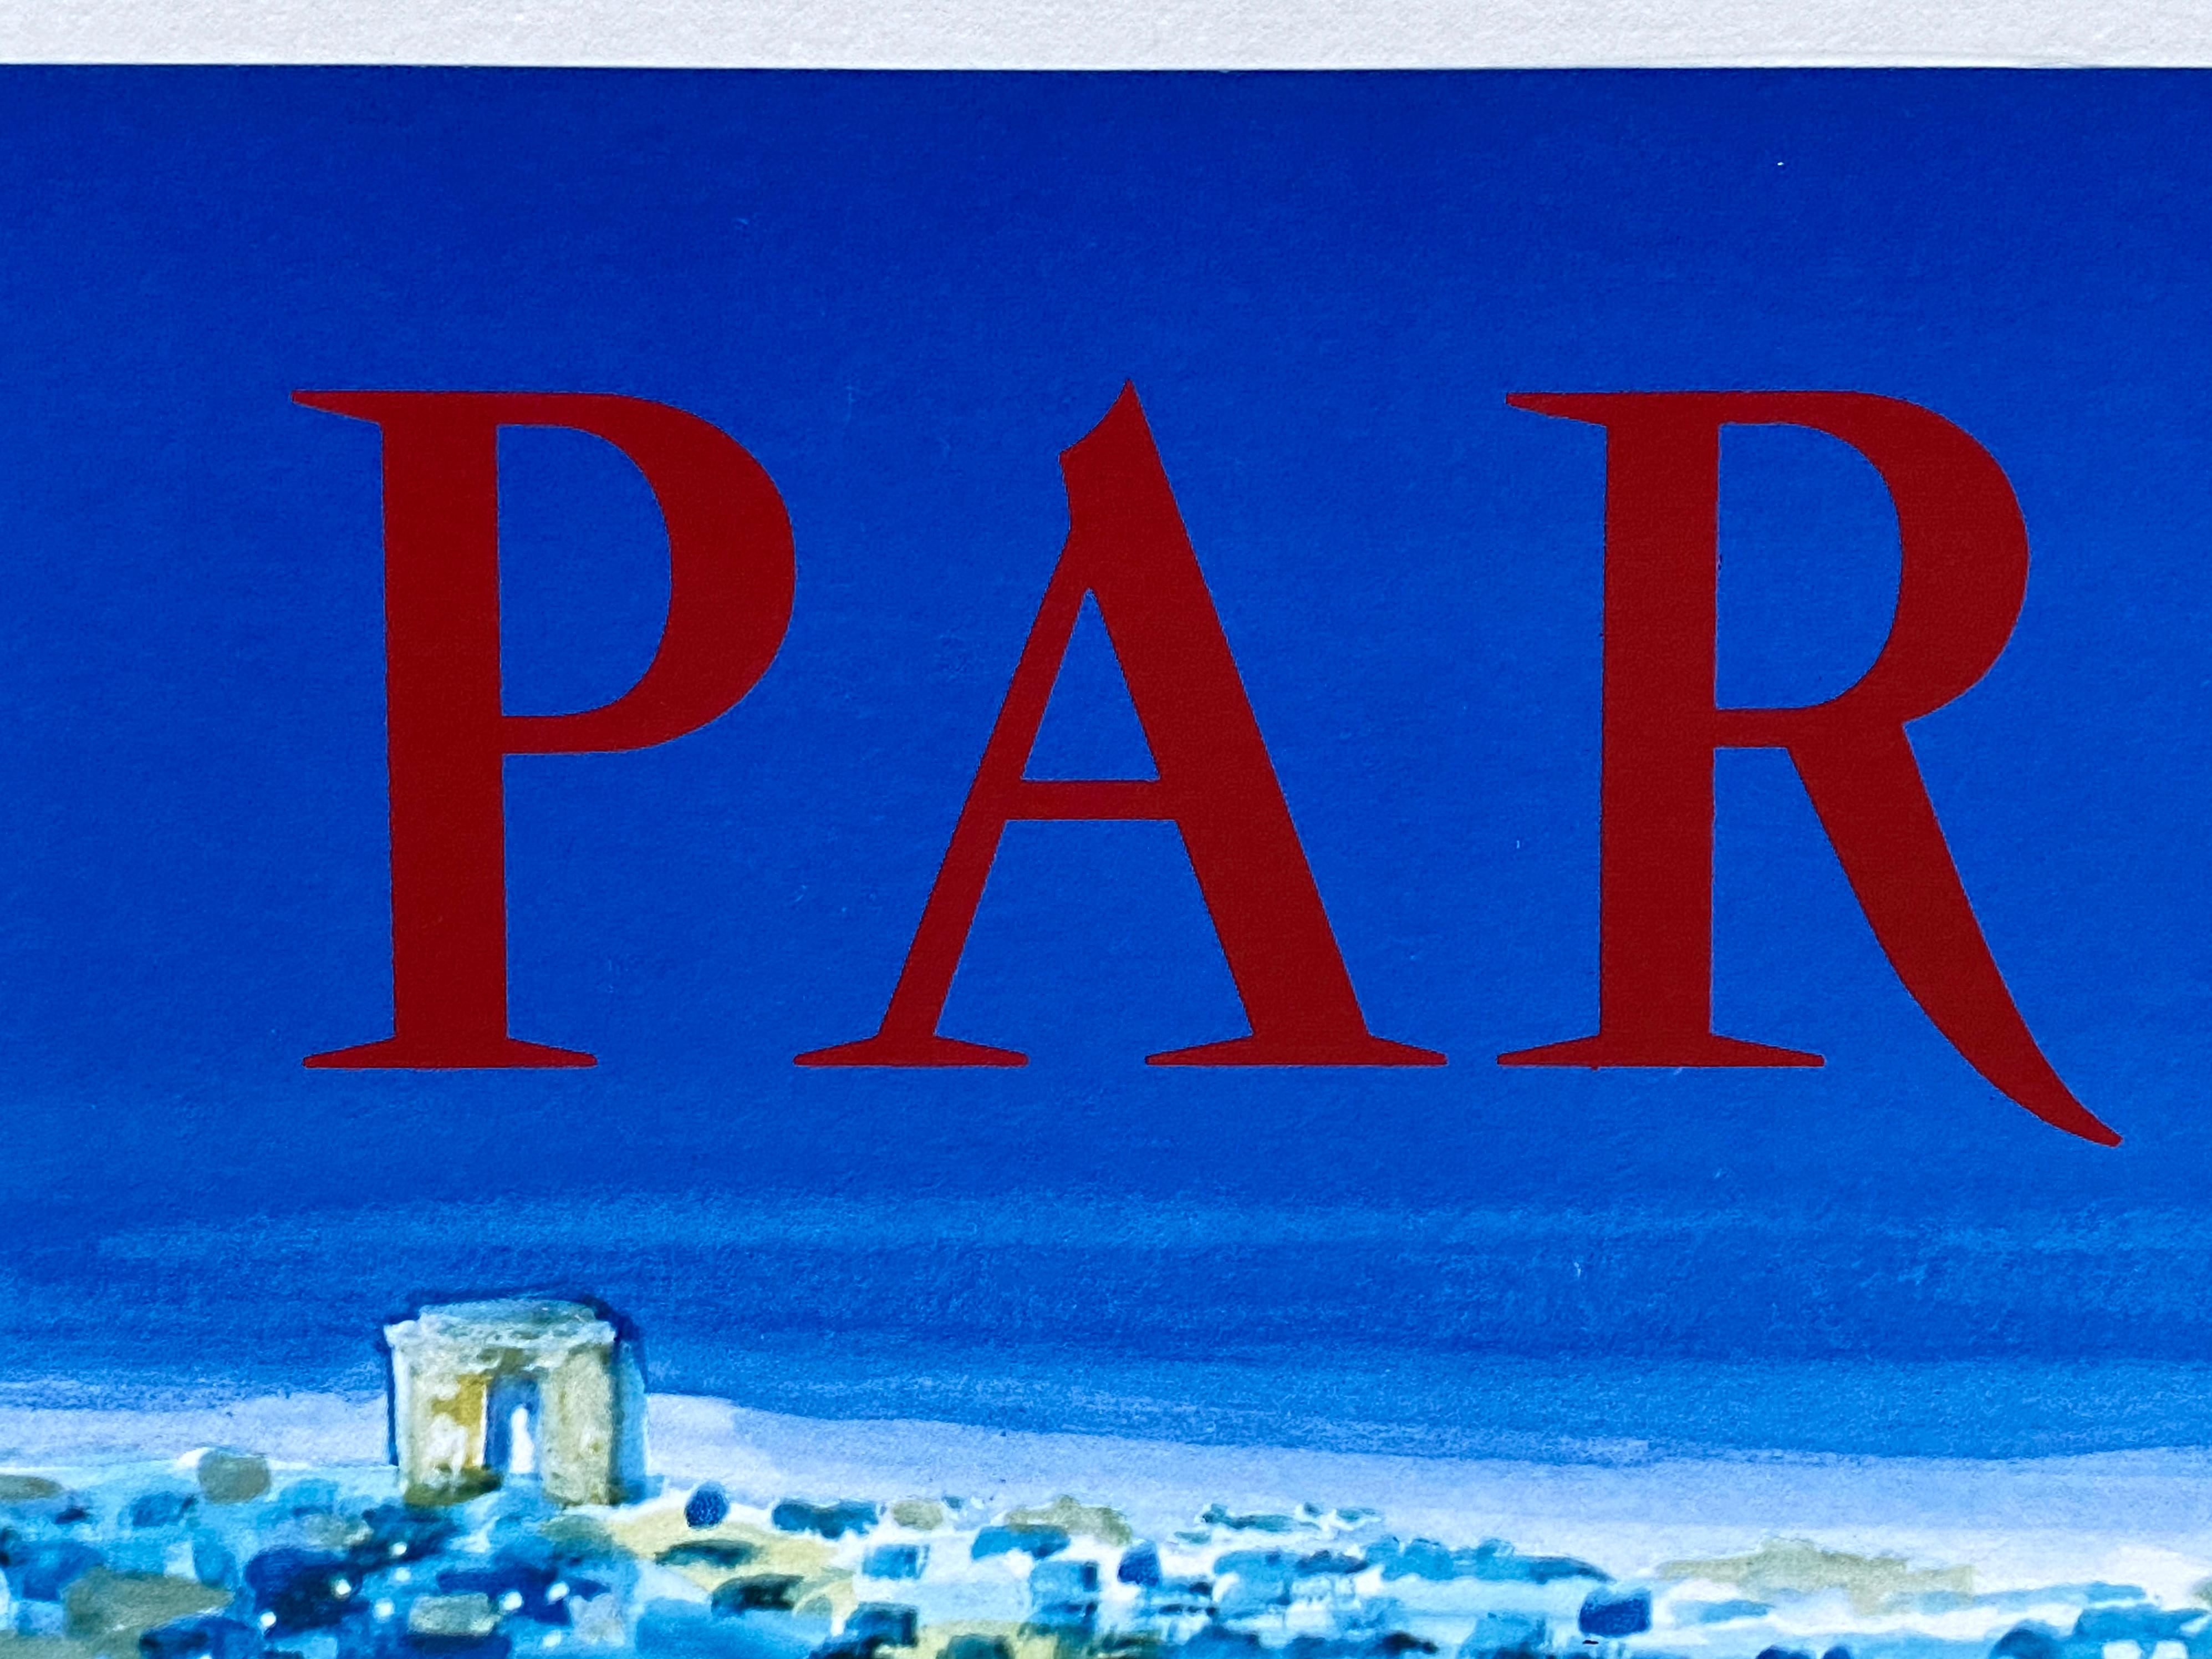 French 'Air France Paris' Original Vintage Travel Poster by Bernard Villemot, 1967 For Sale